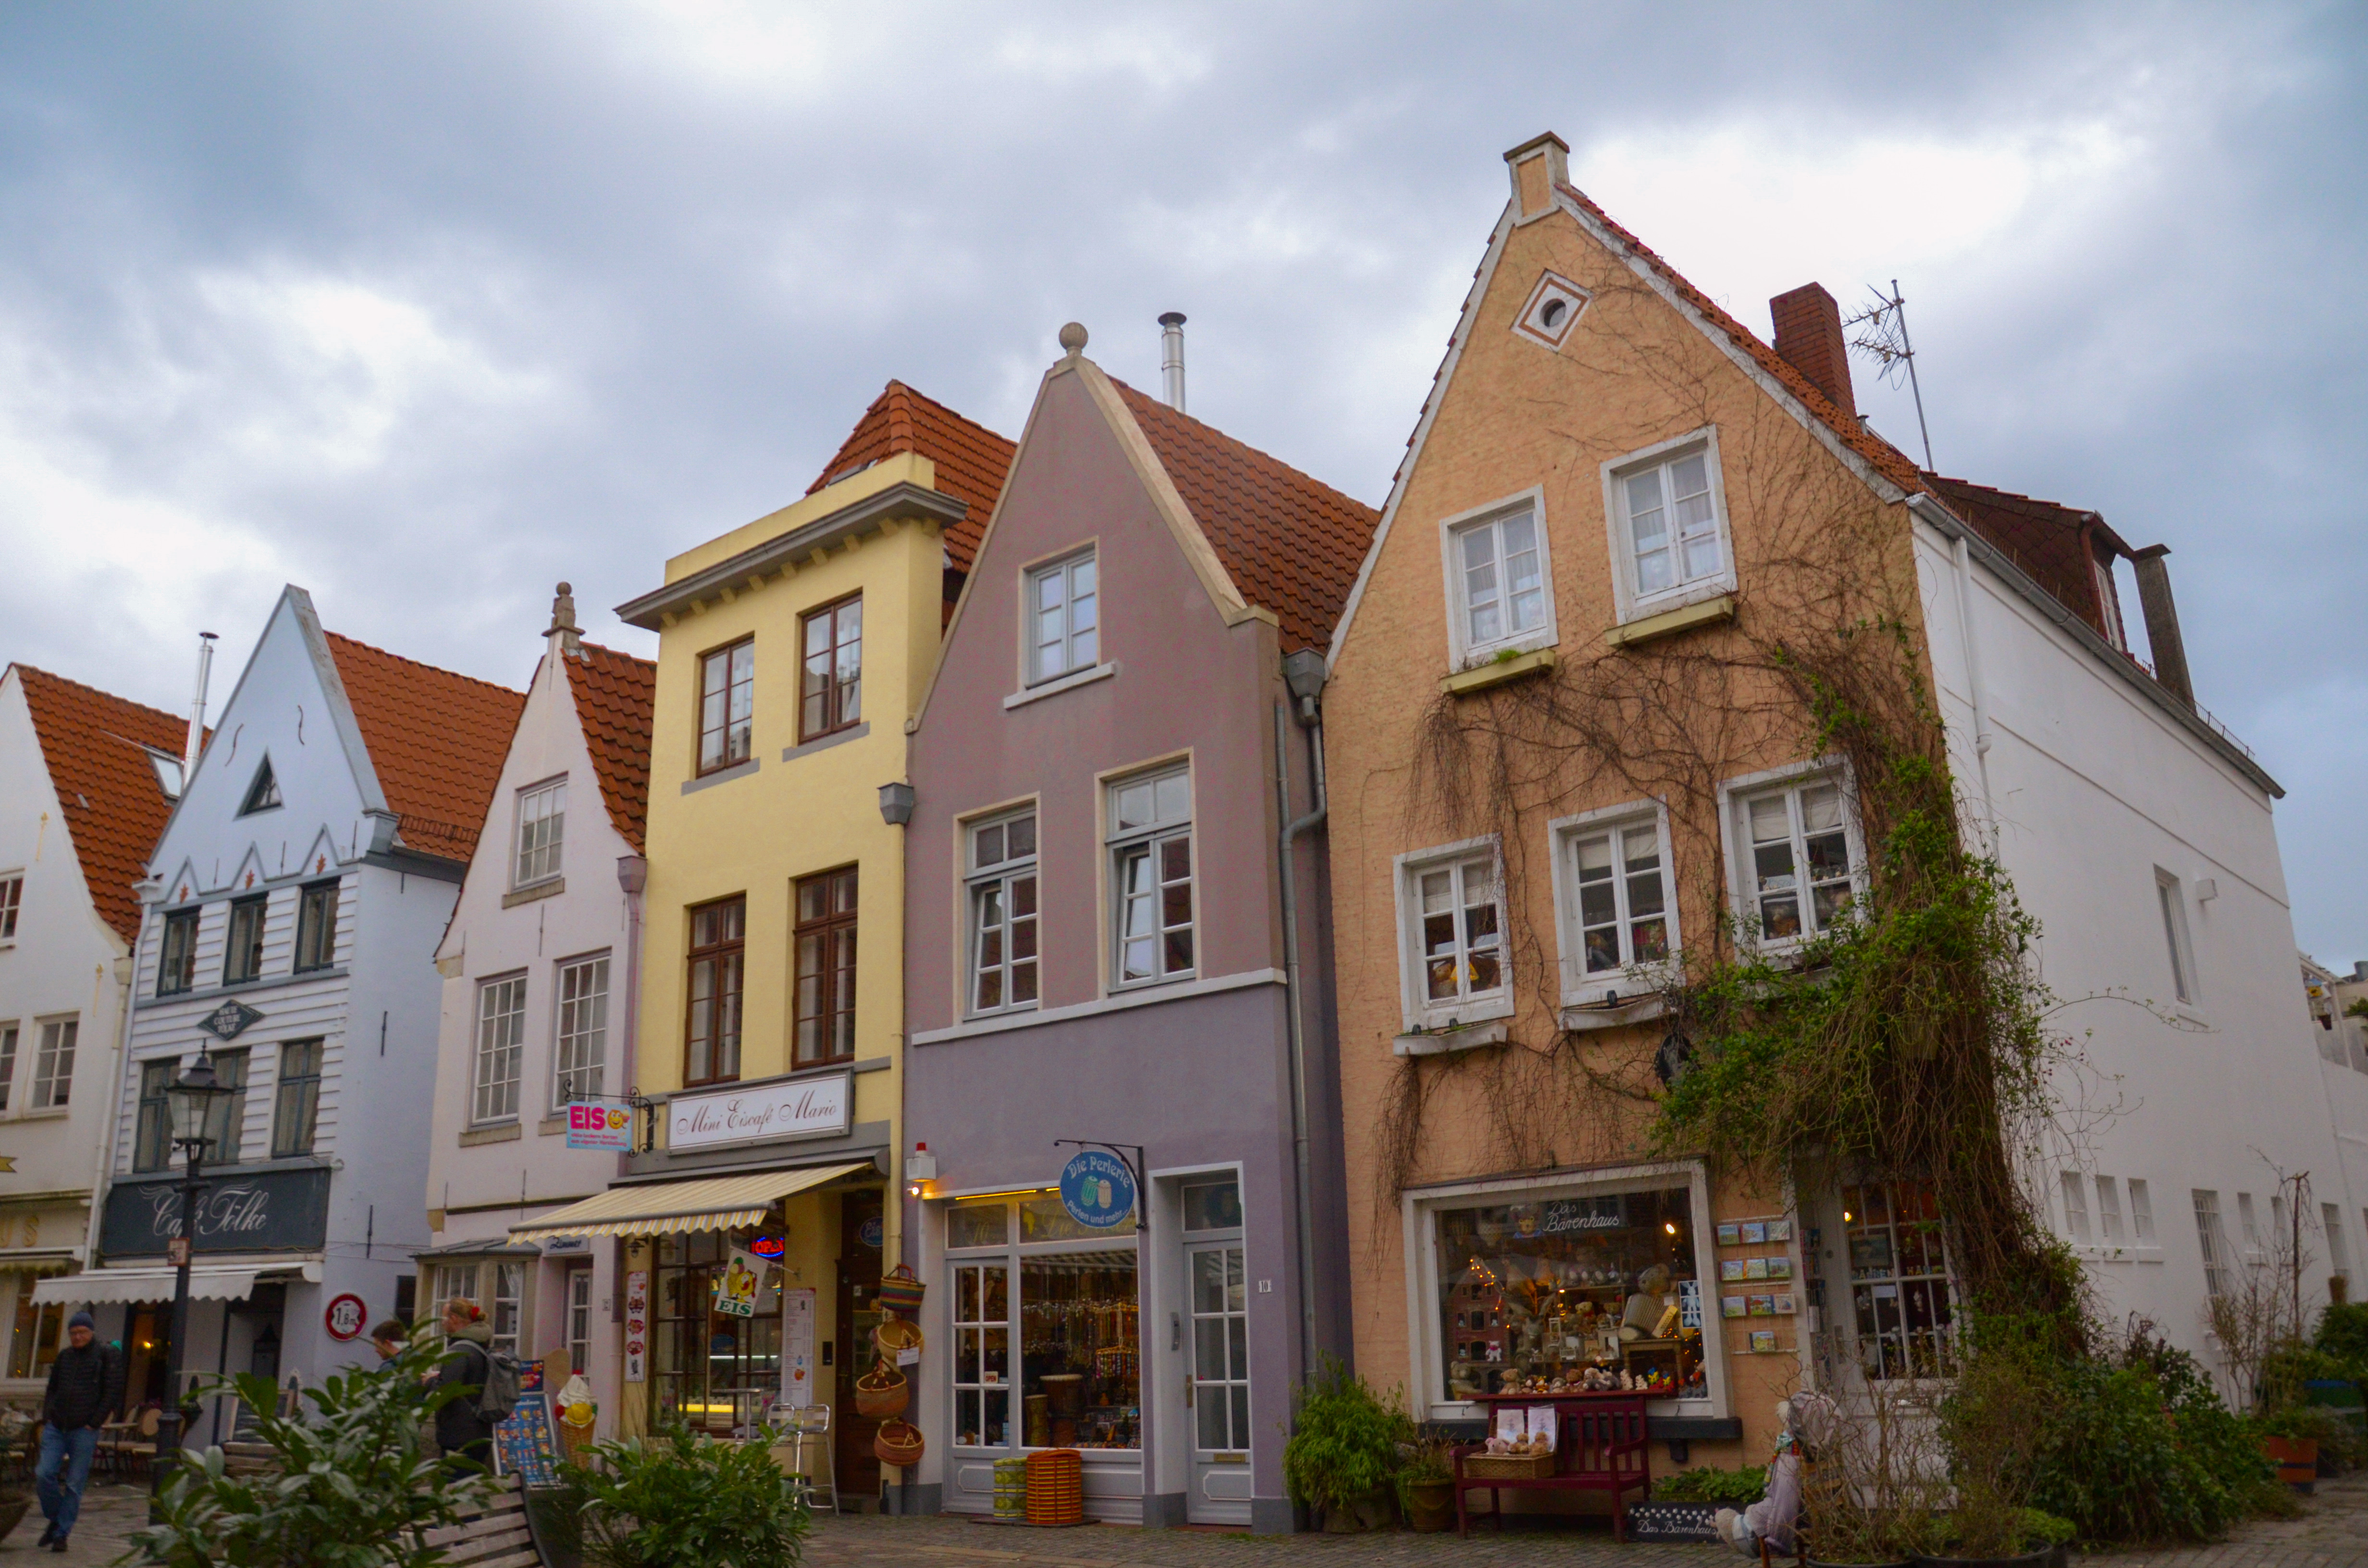 The historic Schnoor Quarter in Bremen